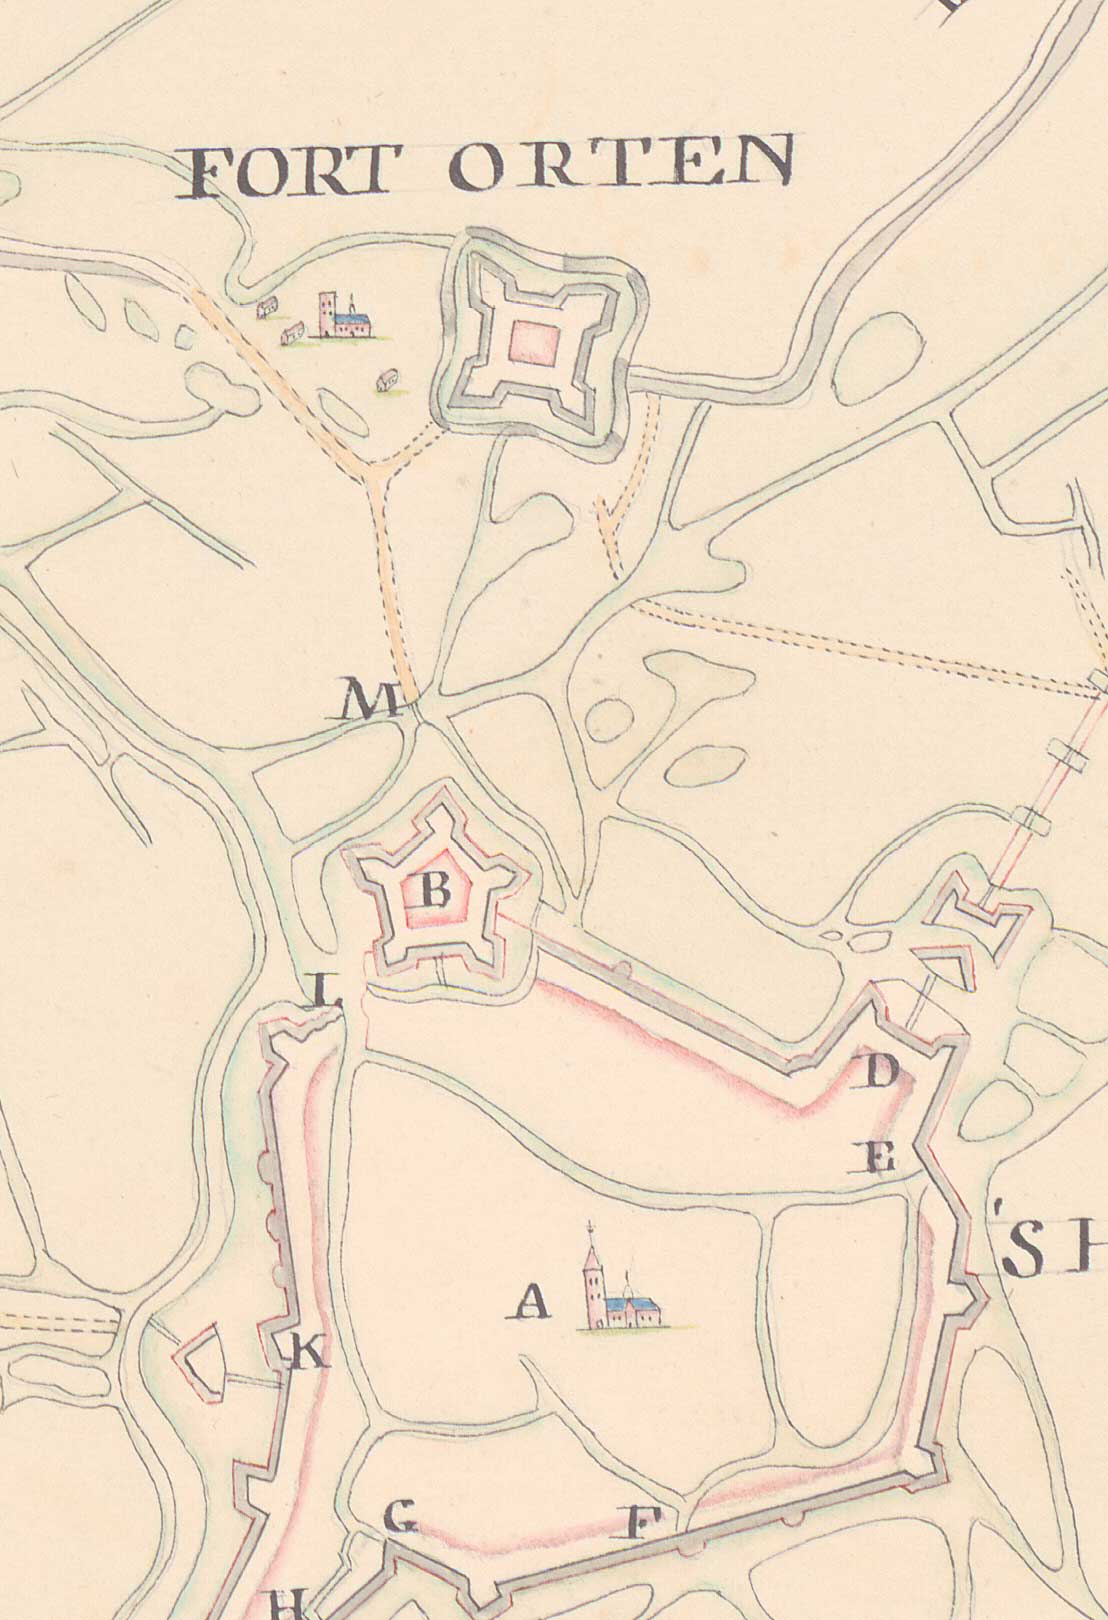 Fort Orthen, de stad (A) en de Citadel (B) op een kopie van een kaart uit 1674 (bron: BHIC, inv. nr. 343-000683)